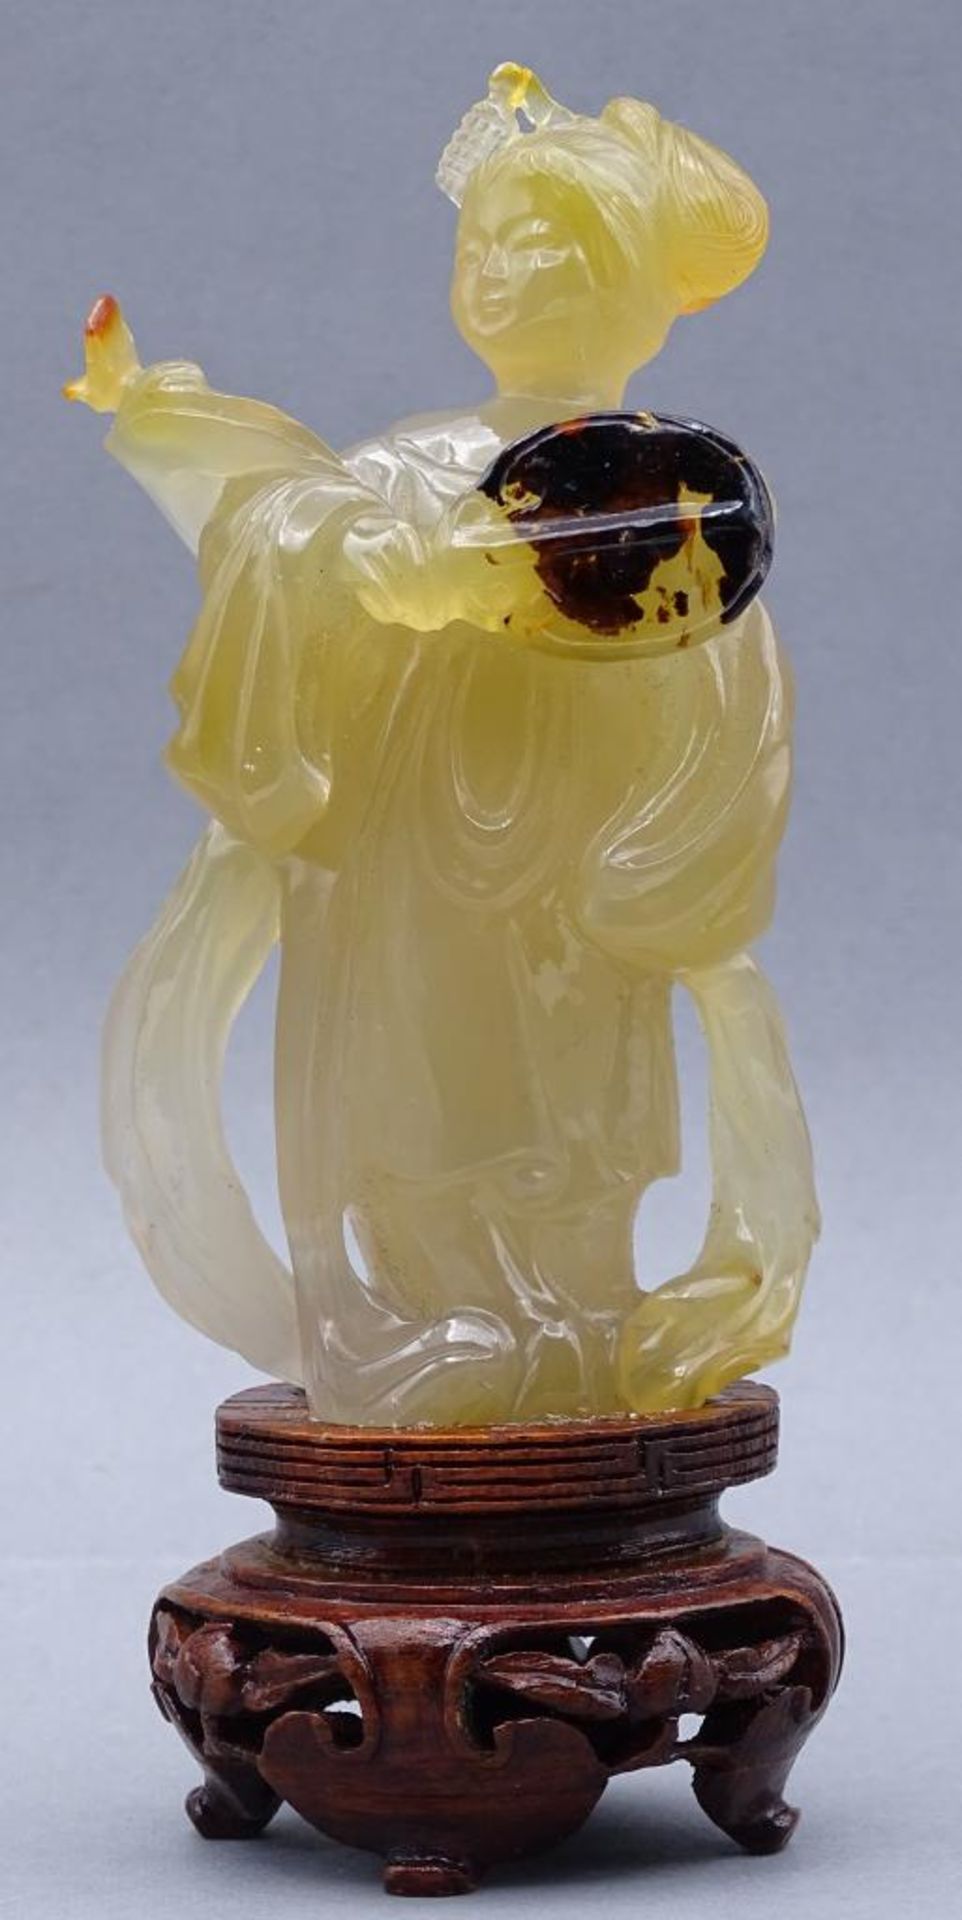 gelbe Jadeschnitzerei, Chinesin mit Fächer auf Holzsockel, China, 18/19. Jhd?, H-ca. 14 cm, rechte